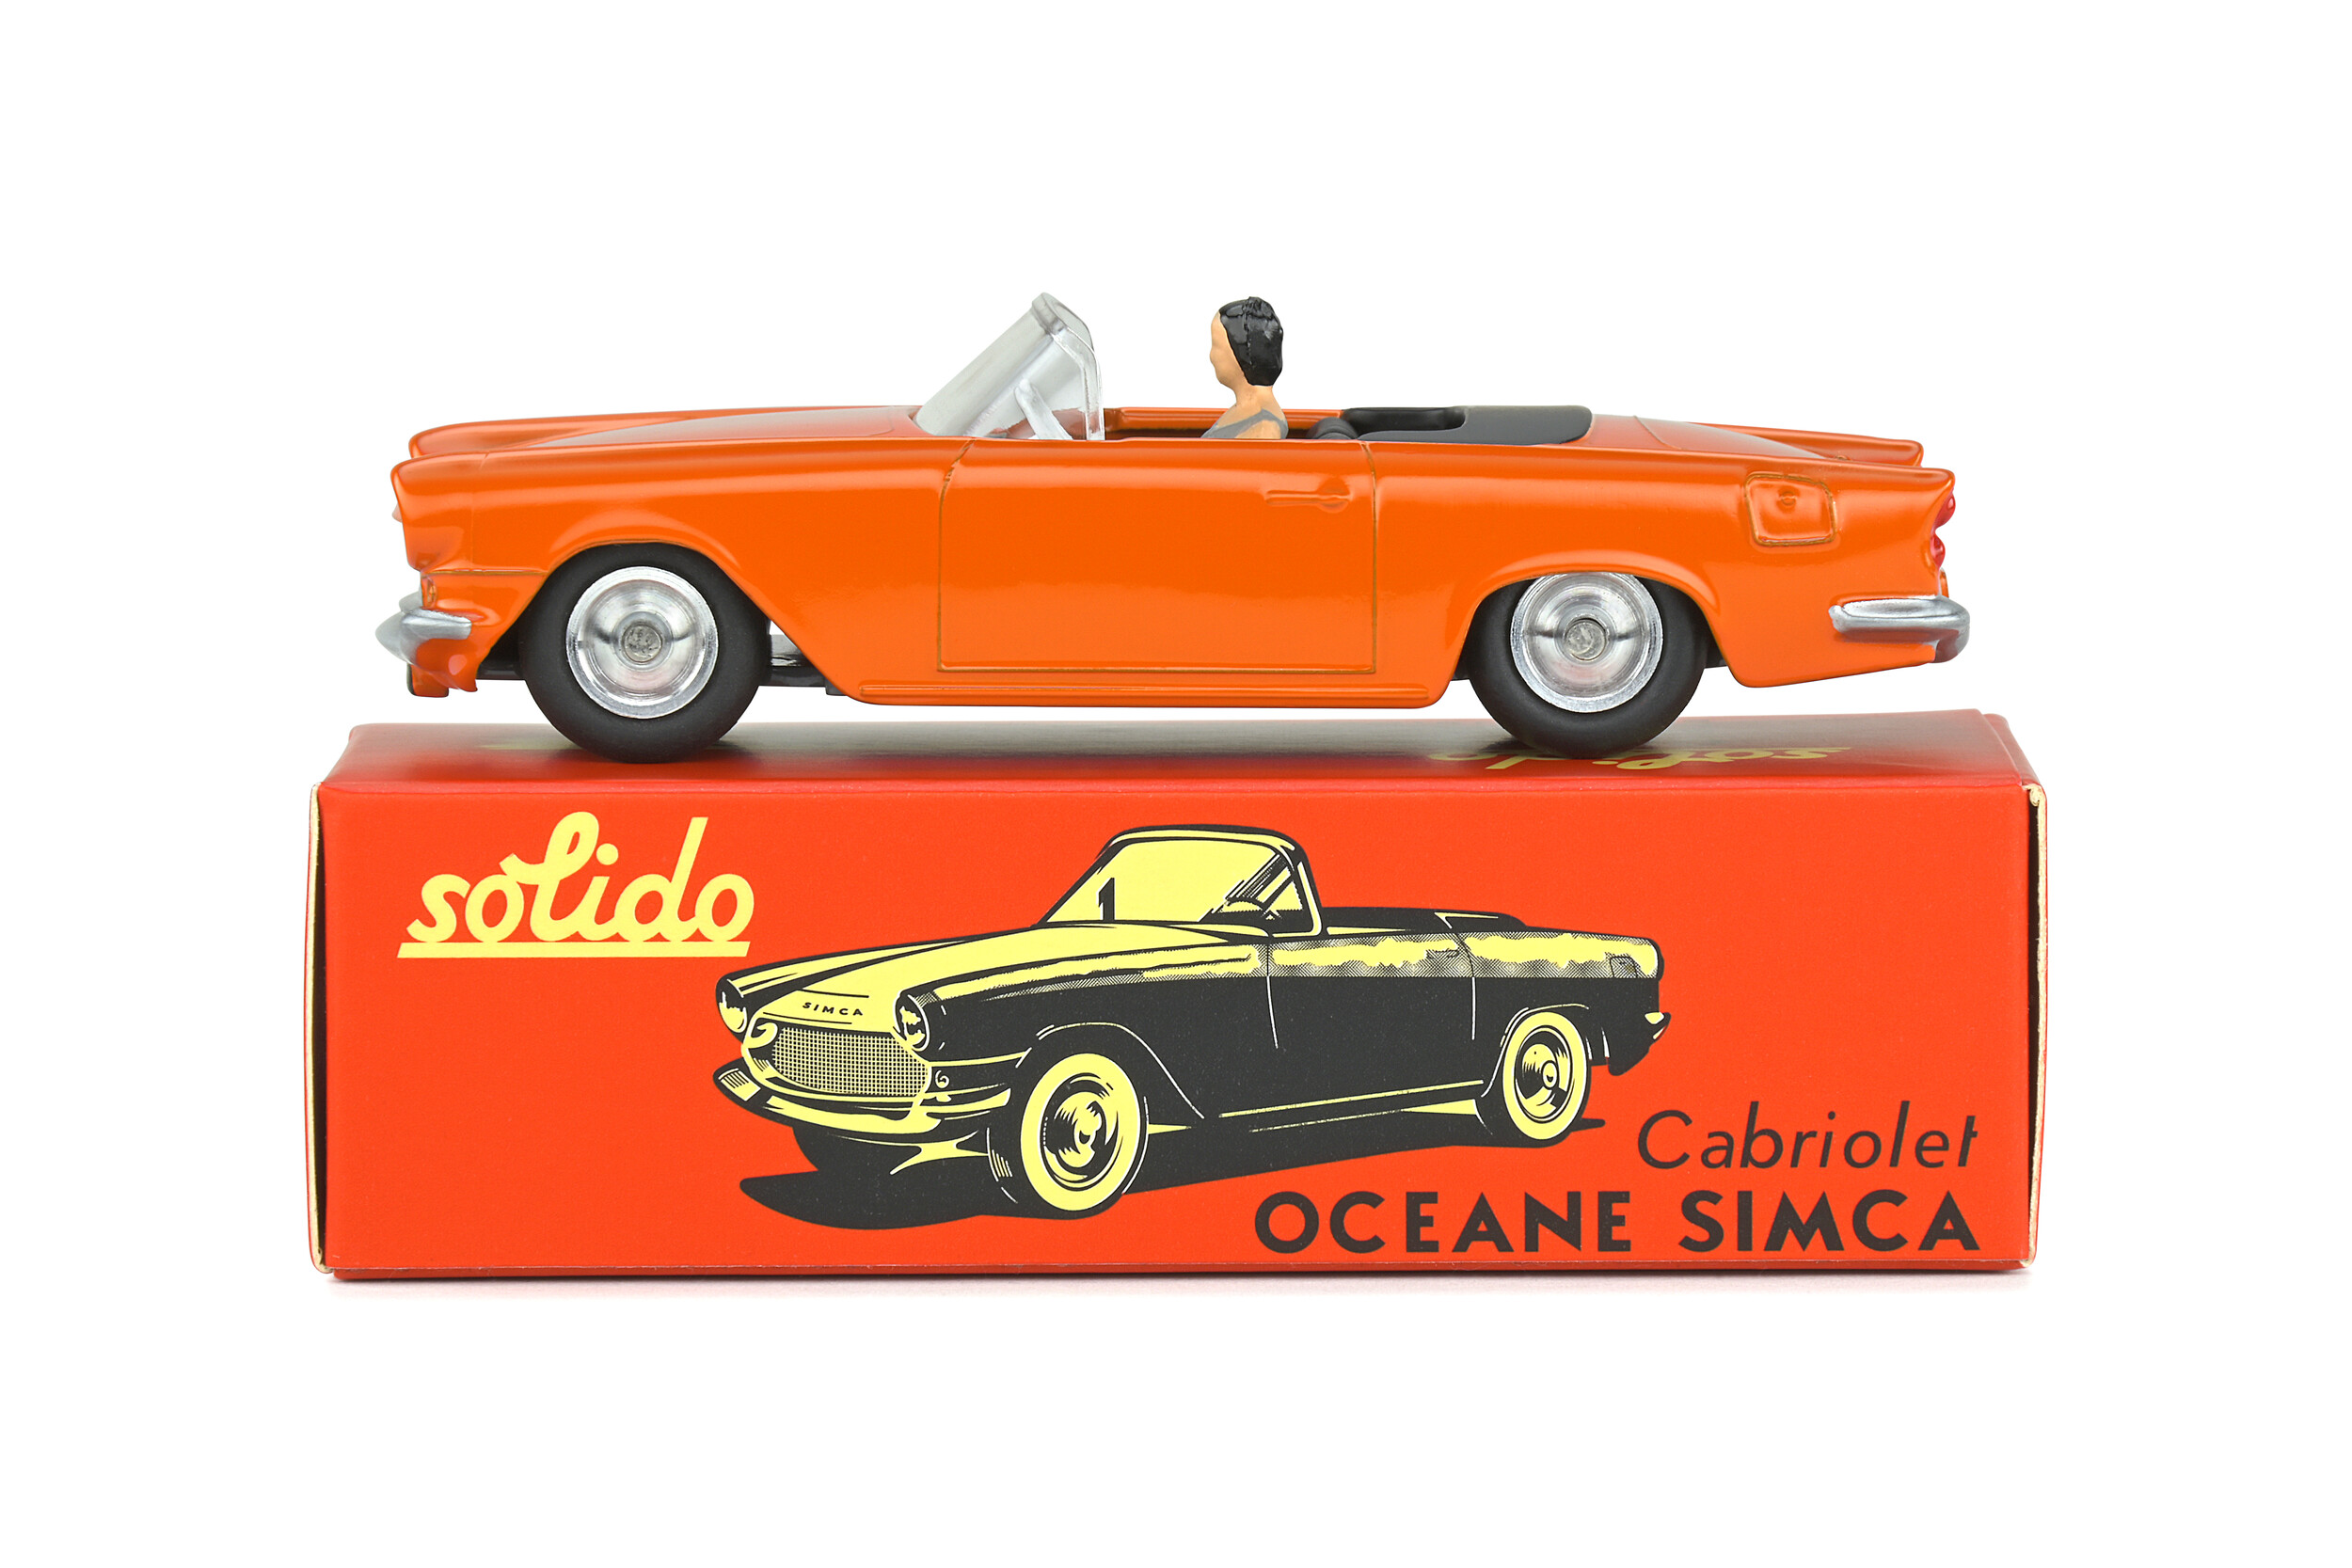 Simca Océane cabriolet Solido 1959 échelle 1/43 